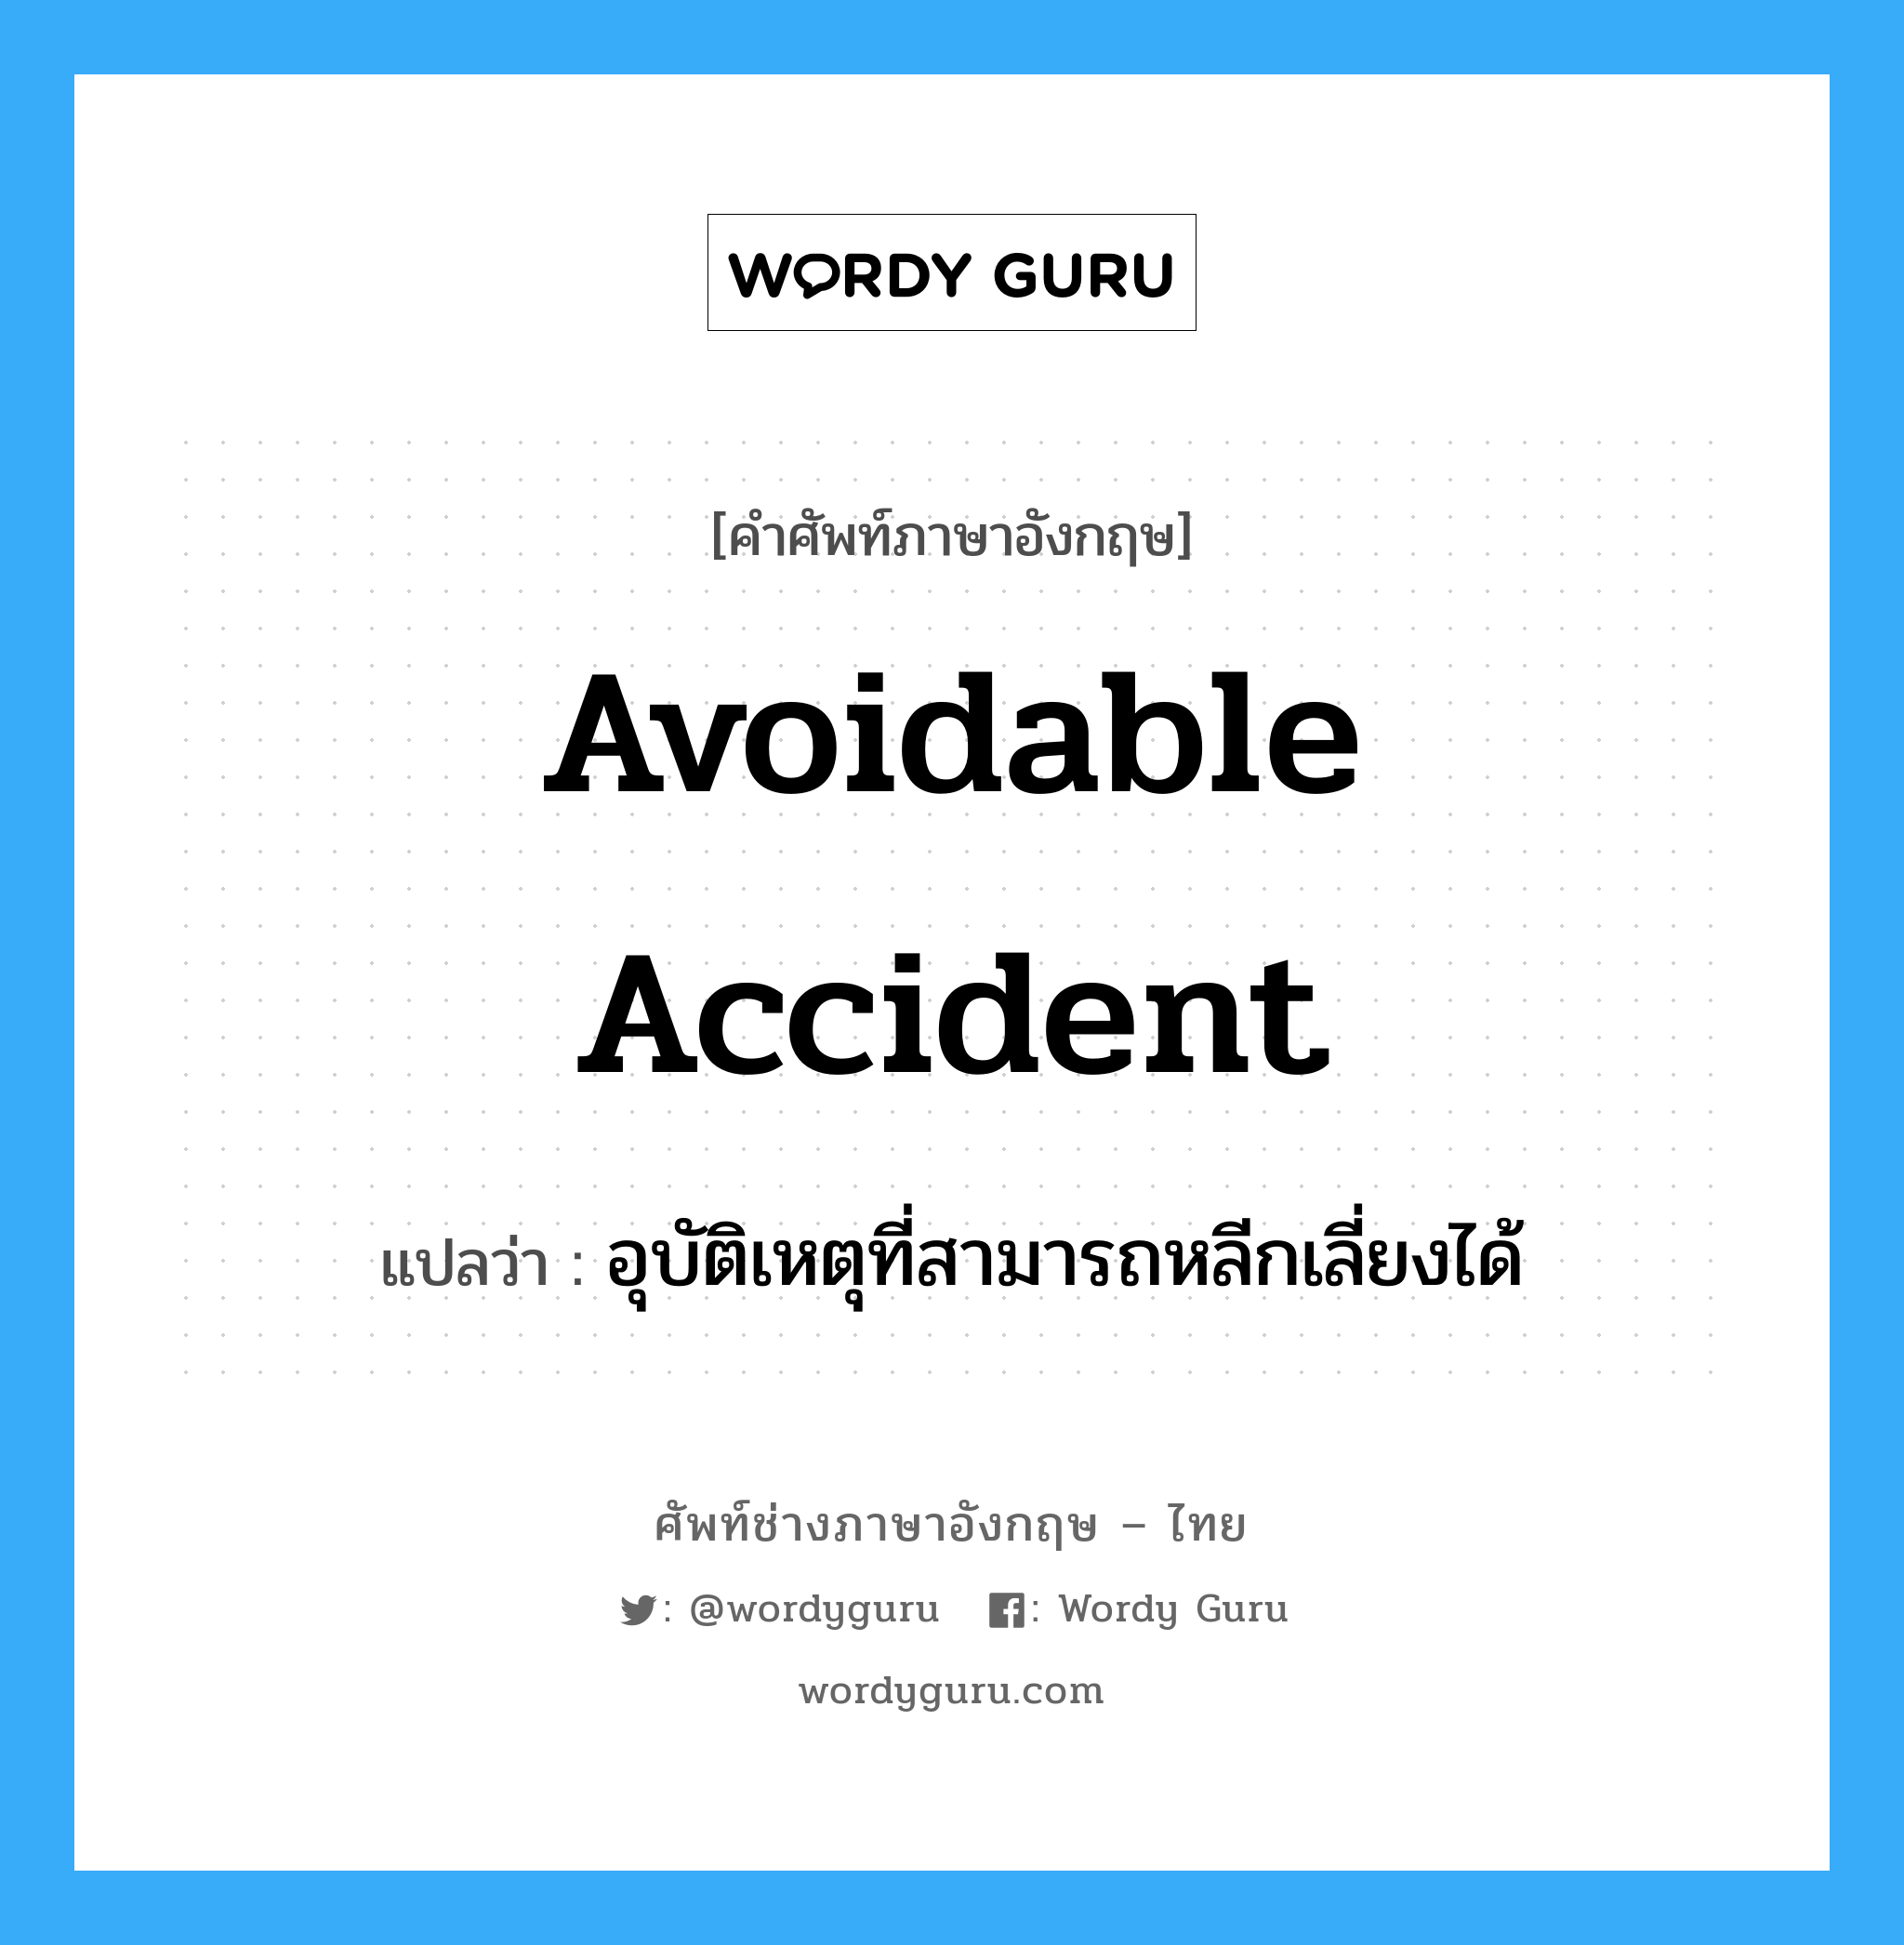 อุบัติเหตุที่สามารถหลีกเลี่ยงได้ ภาษาอังกฤษ?, คำศัพท์ช่างภาษาอังกฤษ - ไทย อุบัติเหตุที่สามารถหลีกเลี่ยงได้ คำศัพท์ภาษาอังกฤษ อุบัติเหตุที่สามารถหลีกเลี่ยงได้ แปลว่า Avoidable Accident